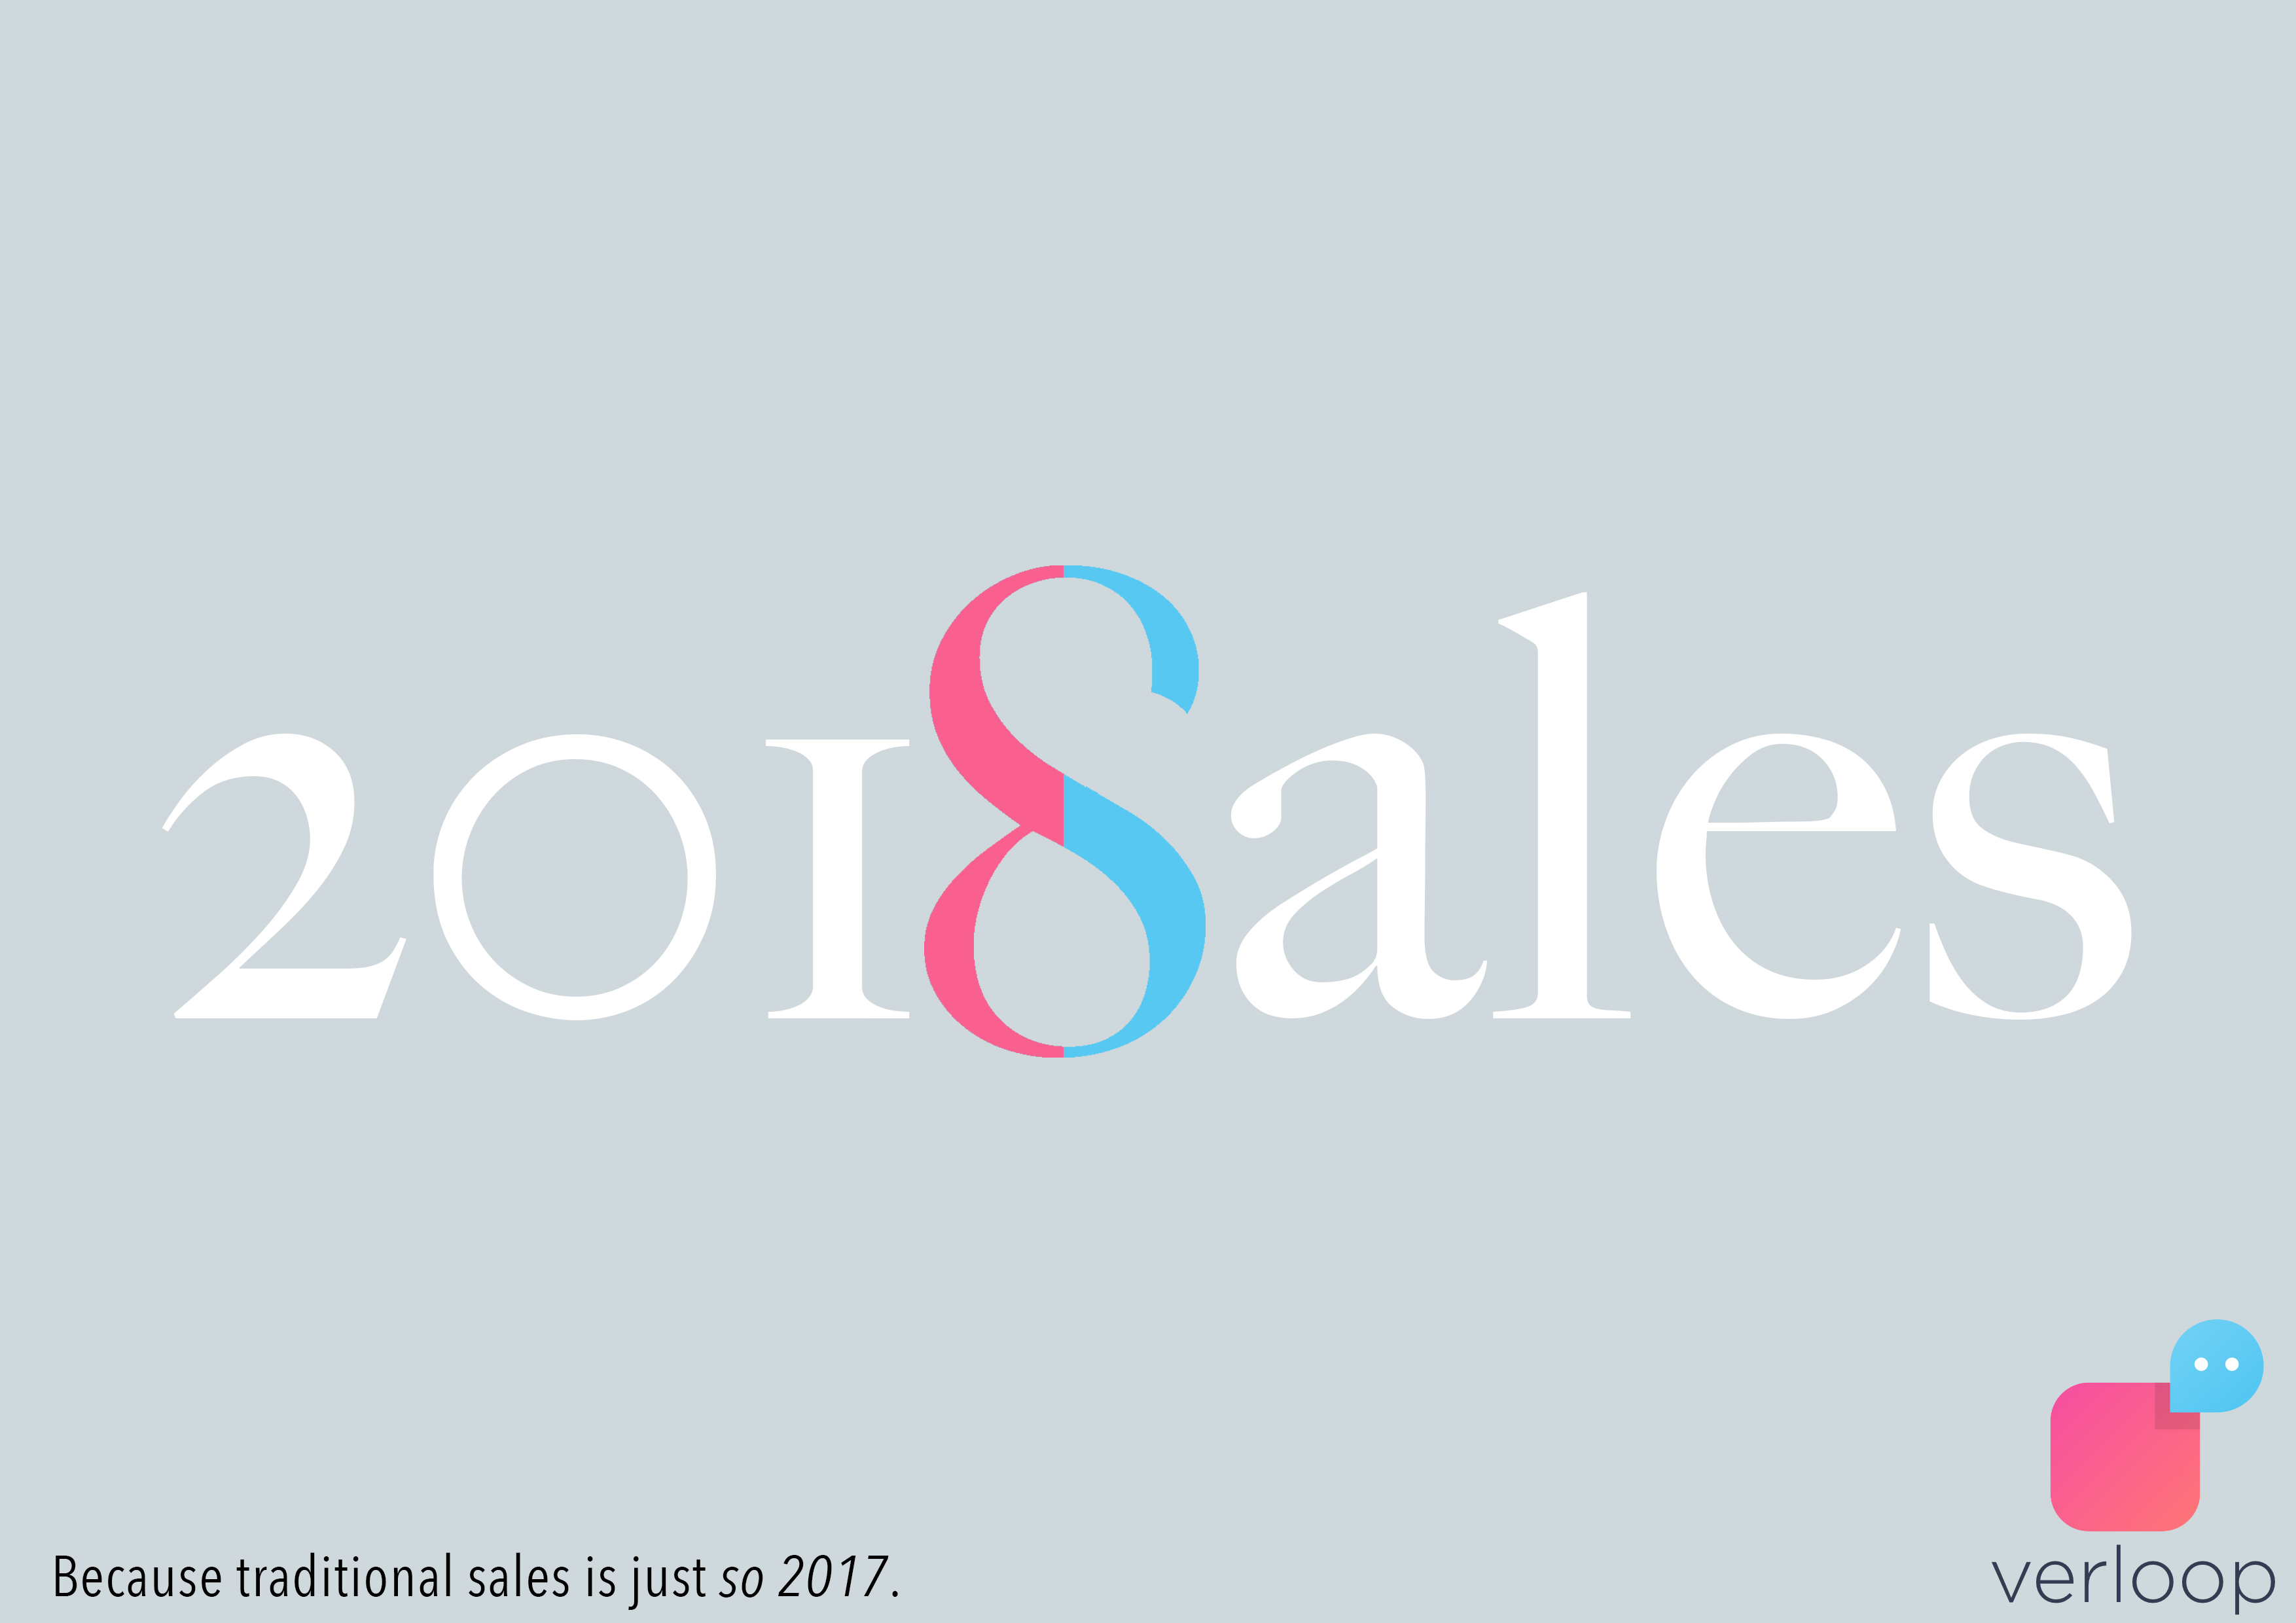 verloop sales in 2018